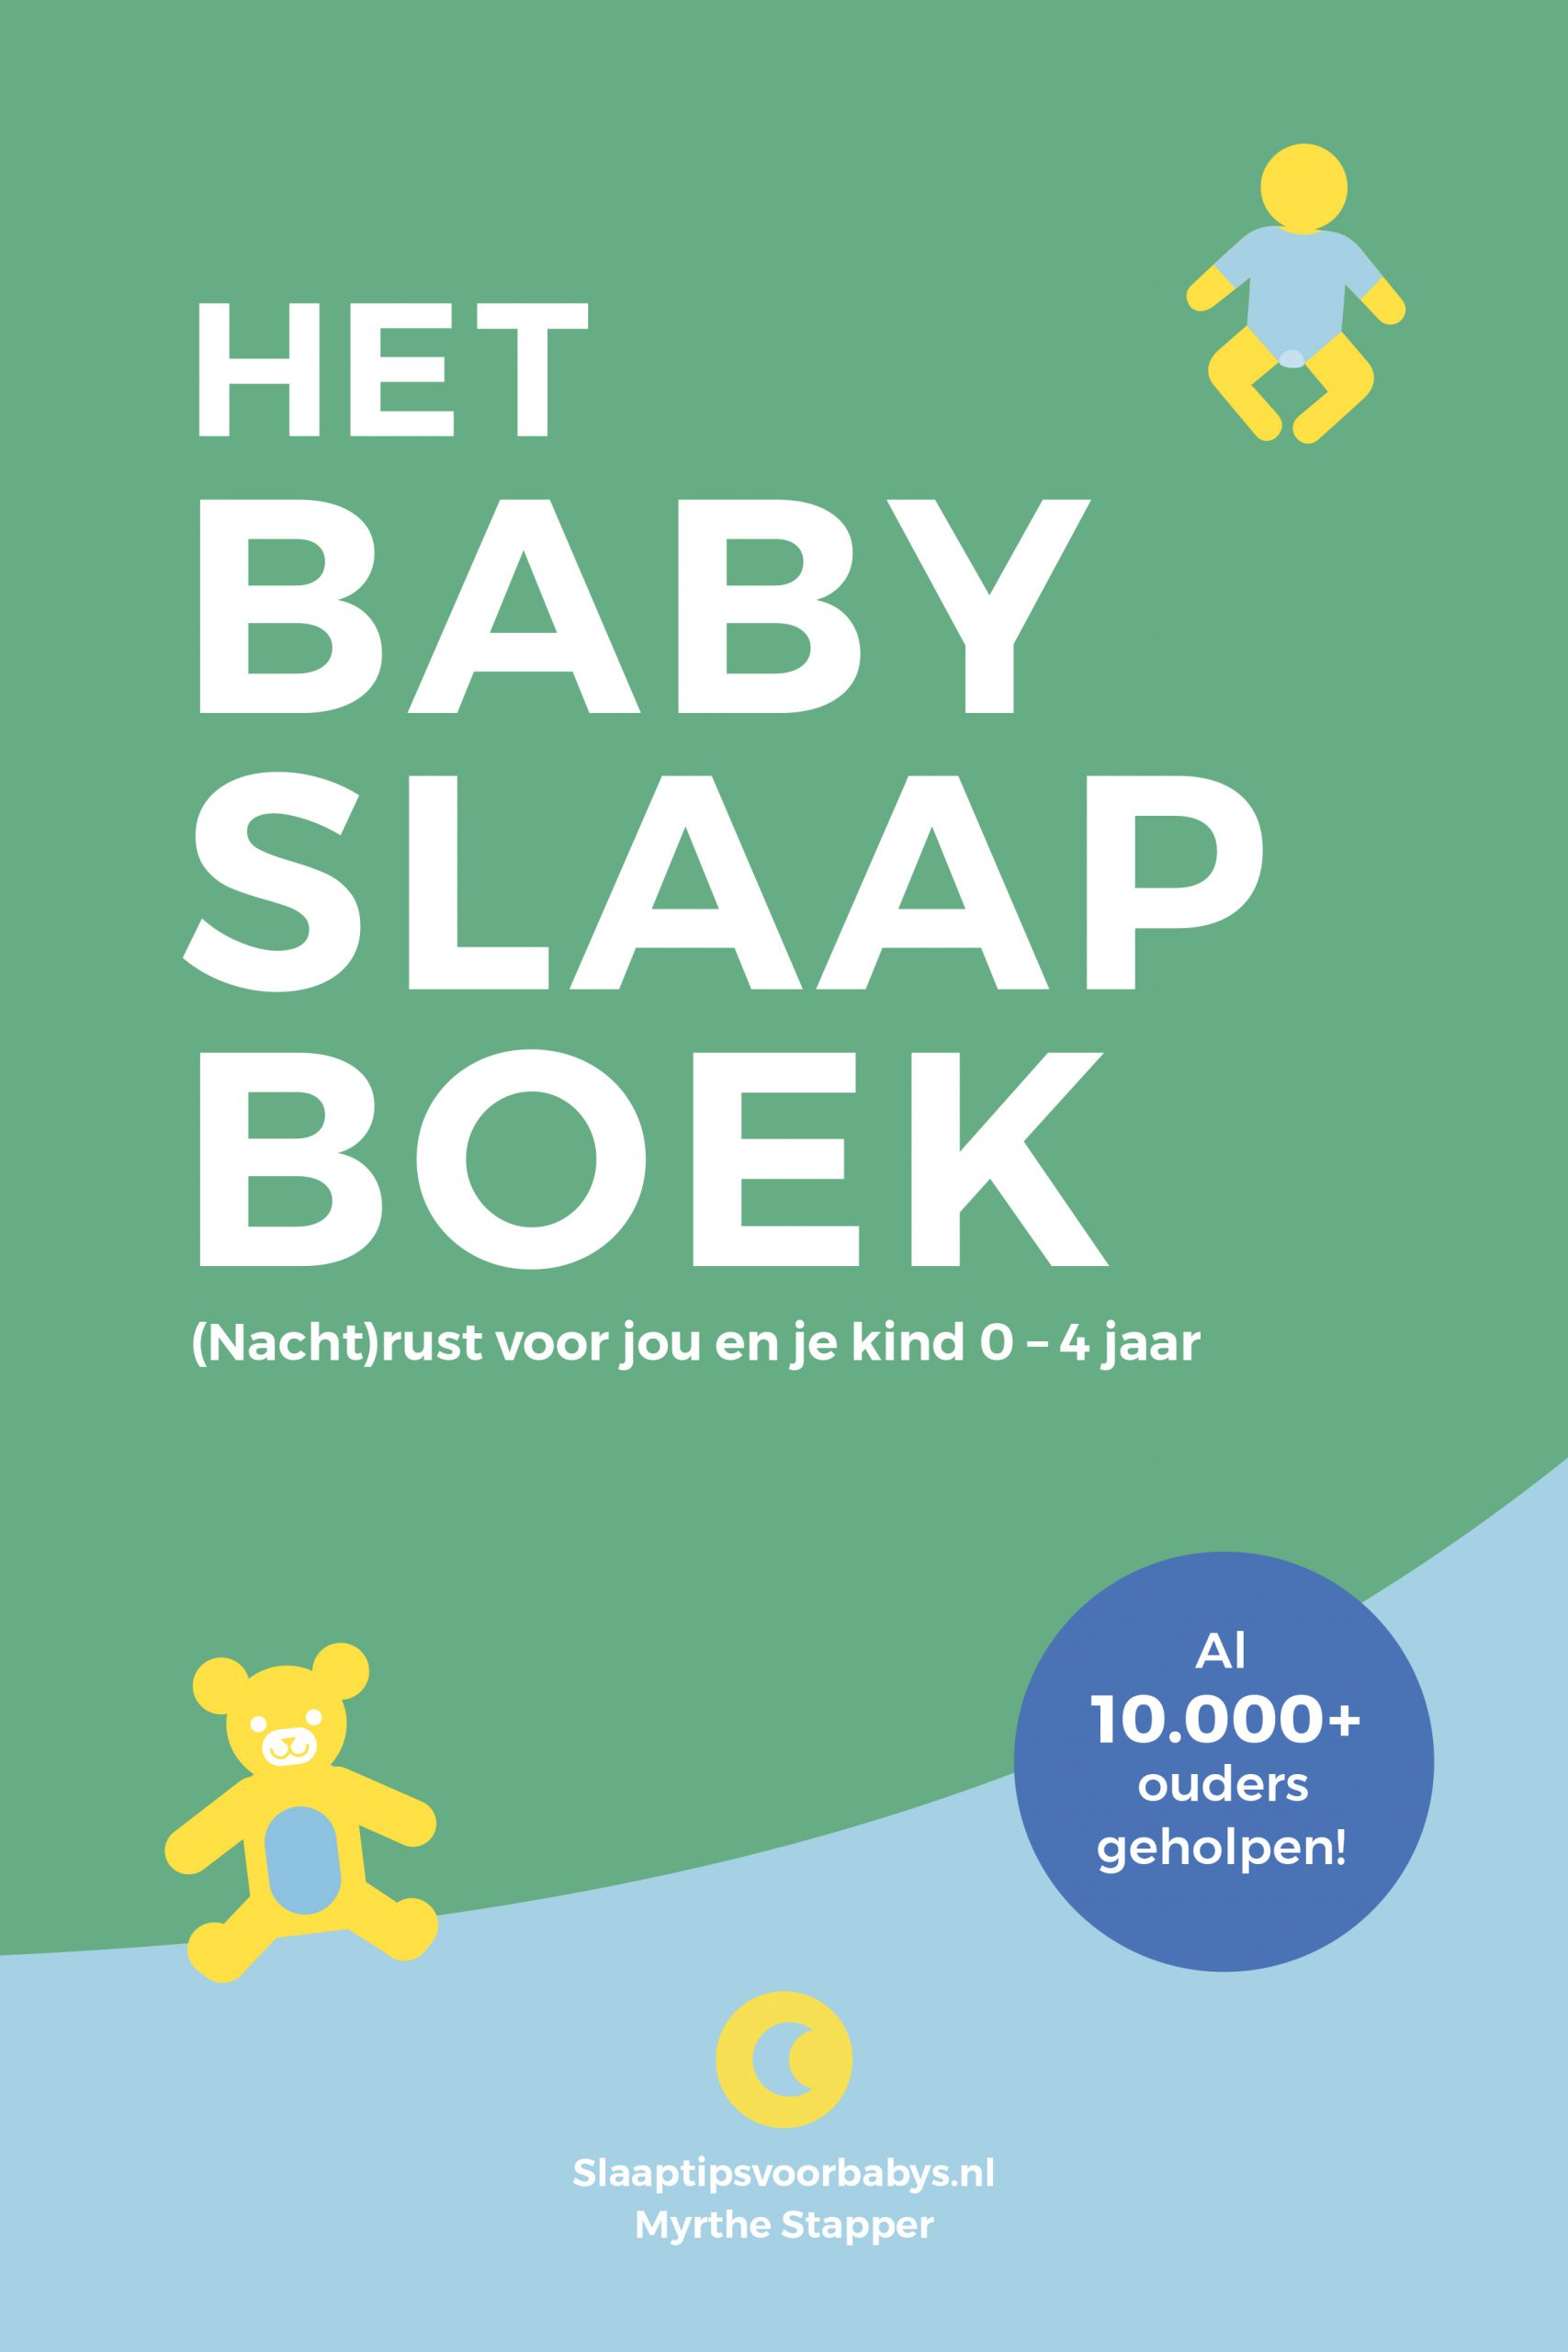 Het baby slaapboek – (Nacht)rust voor jou en kind 0 – 4 jaar | Kijk op Ontwikkeling